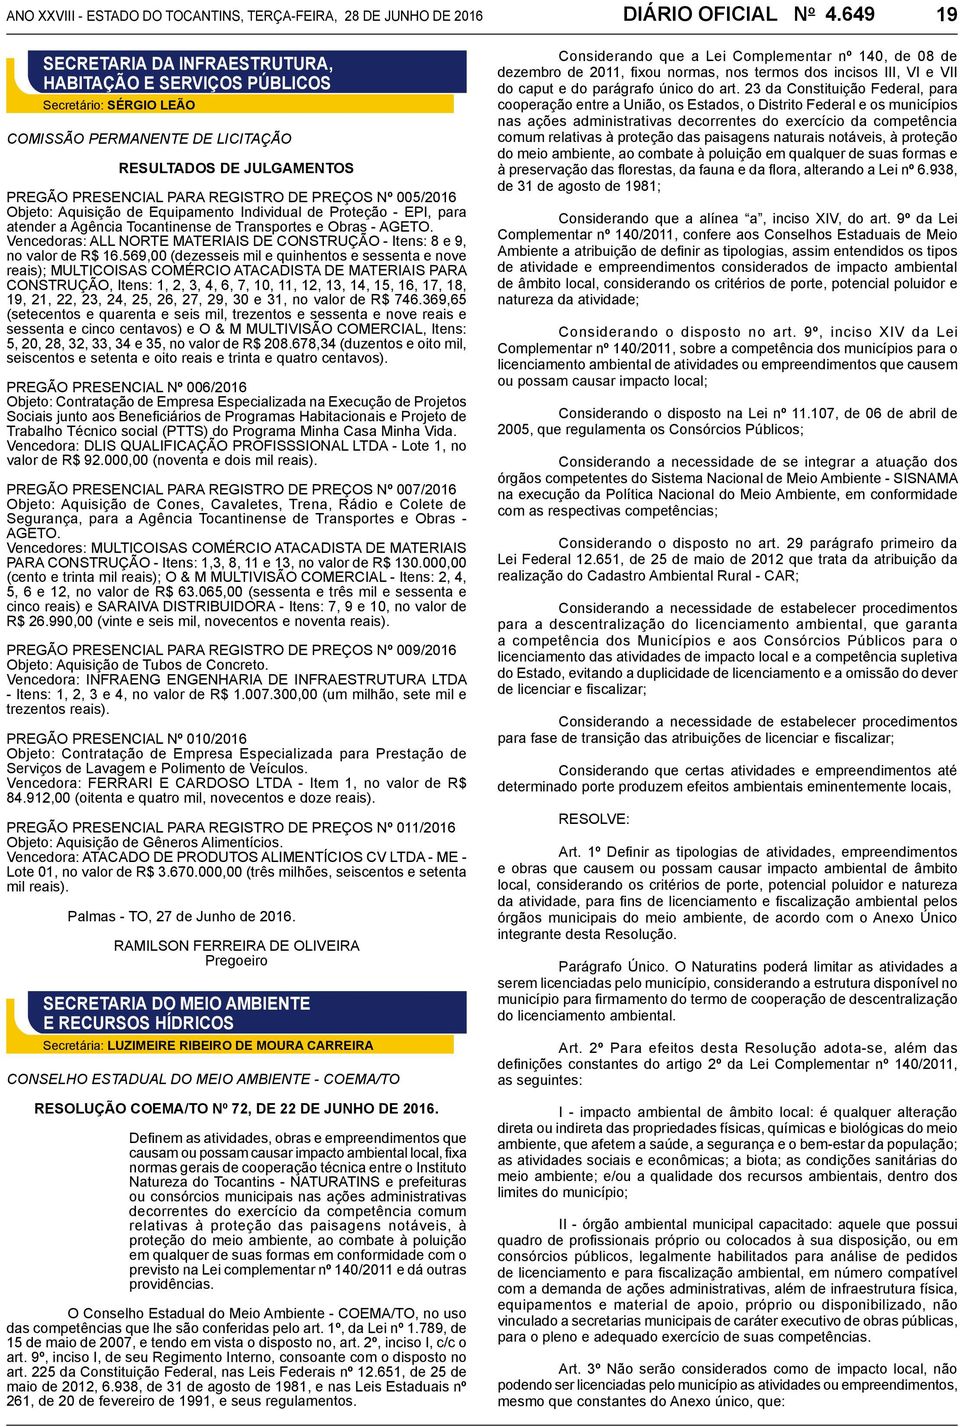 005/2016 Objeto: Aquisição de Equipamento Individual de Proteção - EPI, para atender a Agência Tocantinense de Transportes e Obras - AGETO.